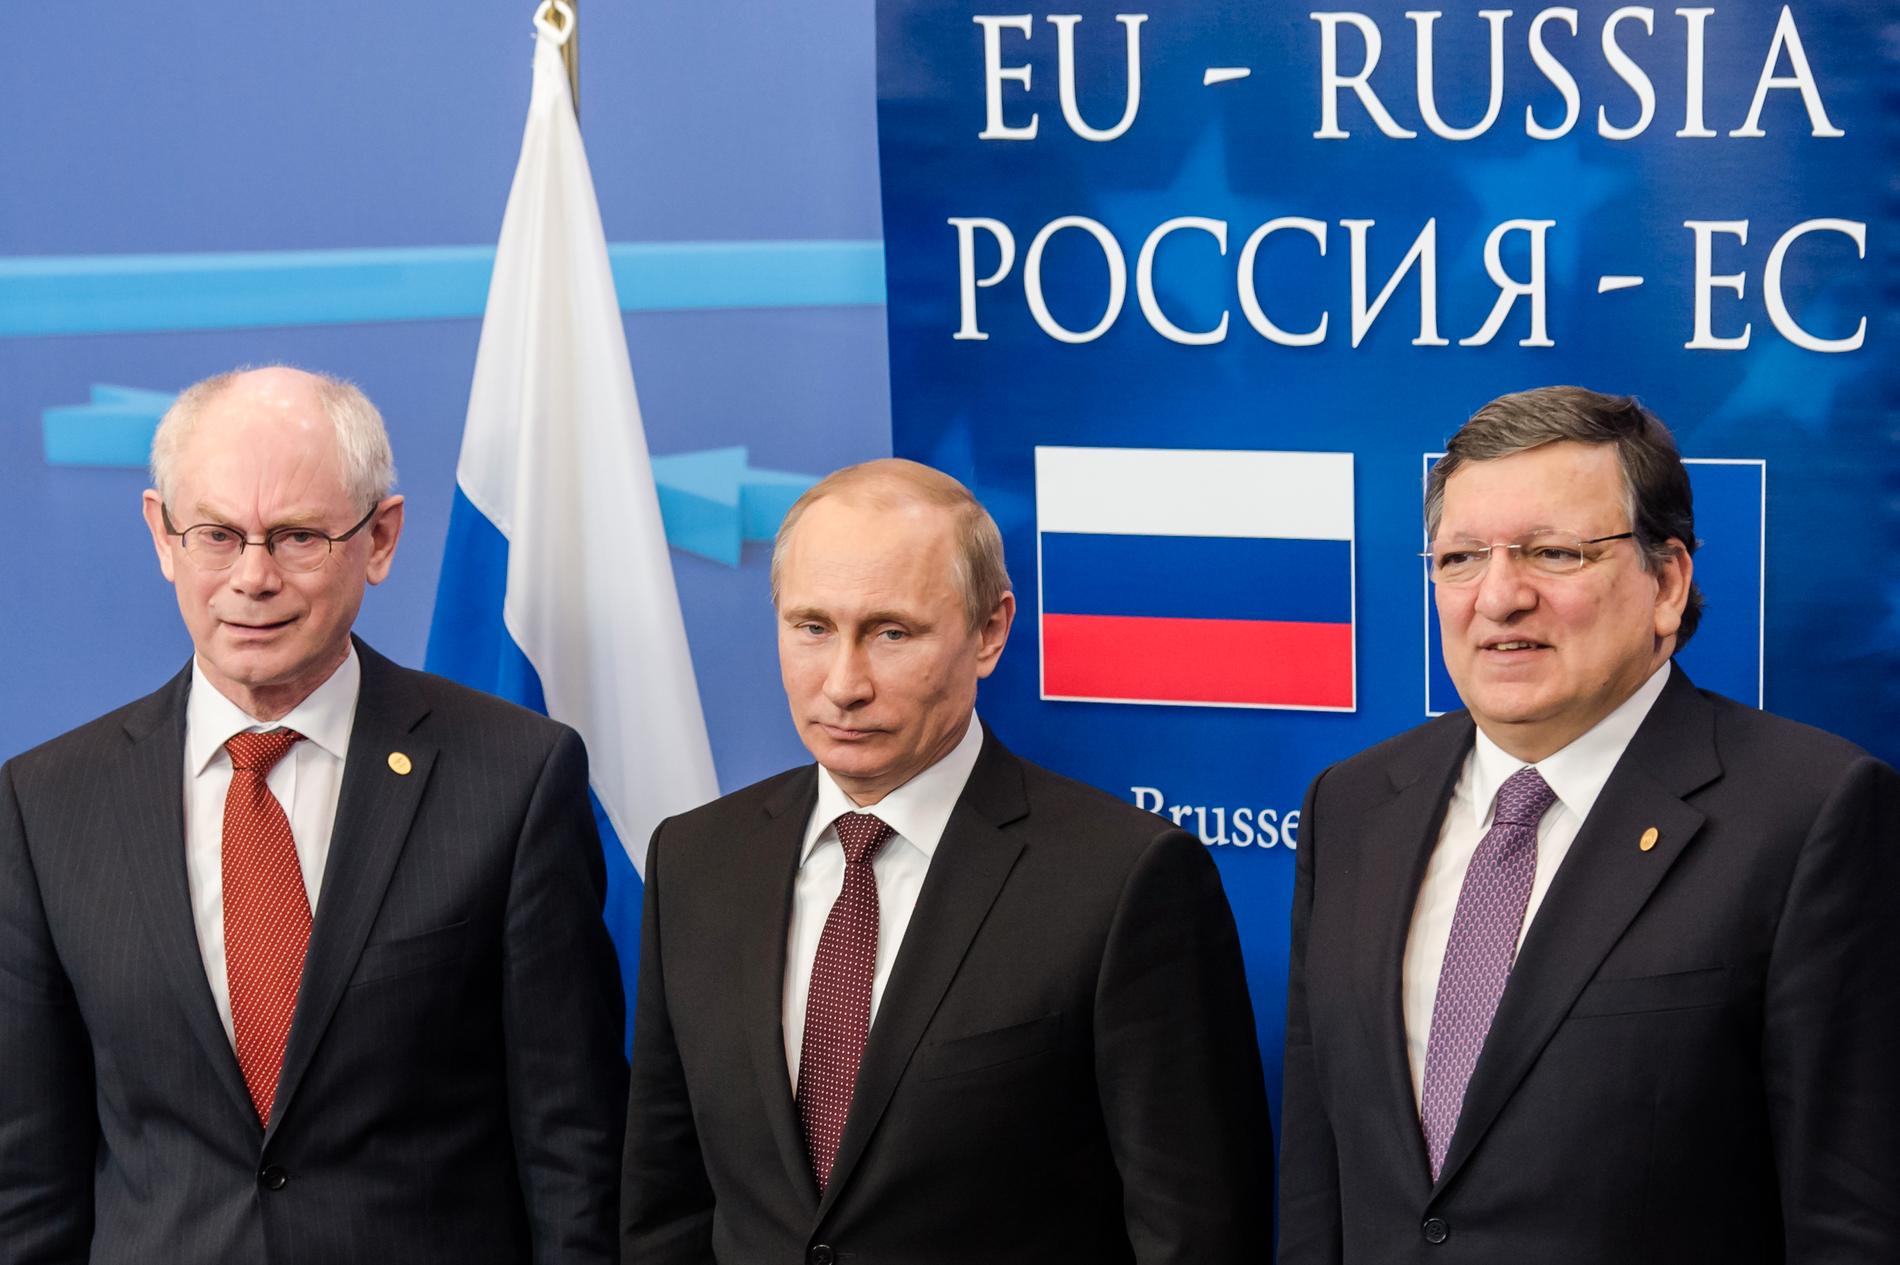 EU:s senaste toppmöte med Ryssland hölls 2014 då dåvarande rådsordföranden Herman Van Rompuy (till vänster) och dåvarande kommissionsordföranden José Manuel Barroso (till höger) tog emot Rysslands fortsatt närvarande president Vladimir Putin. Arkivbild.